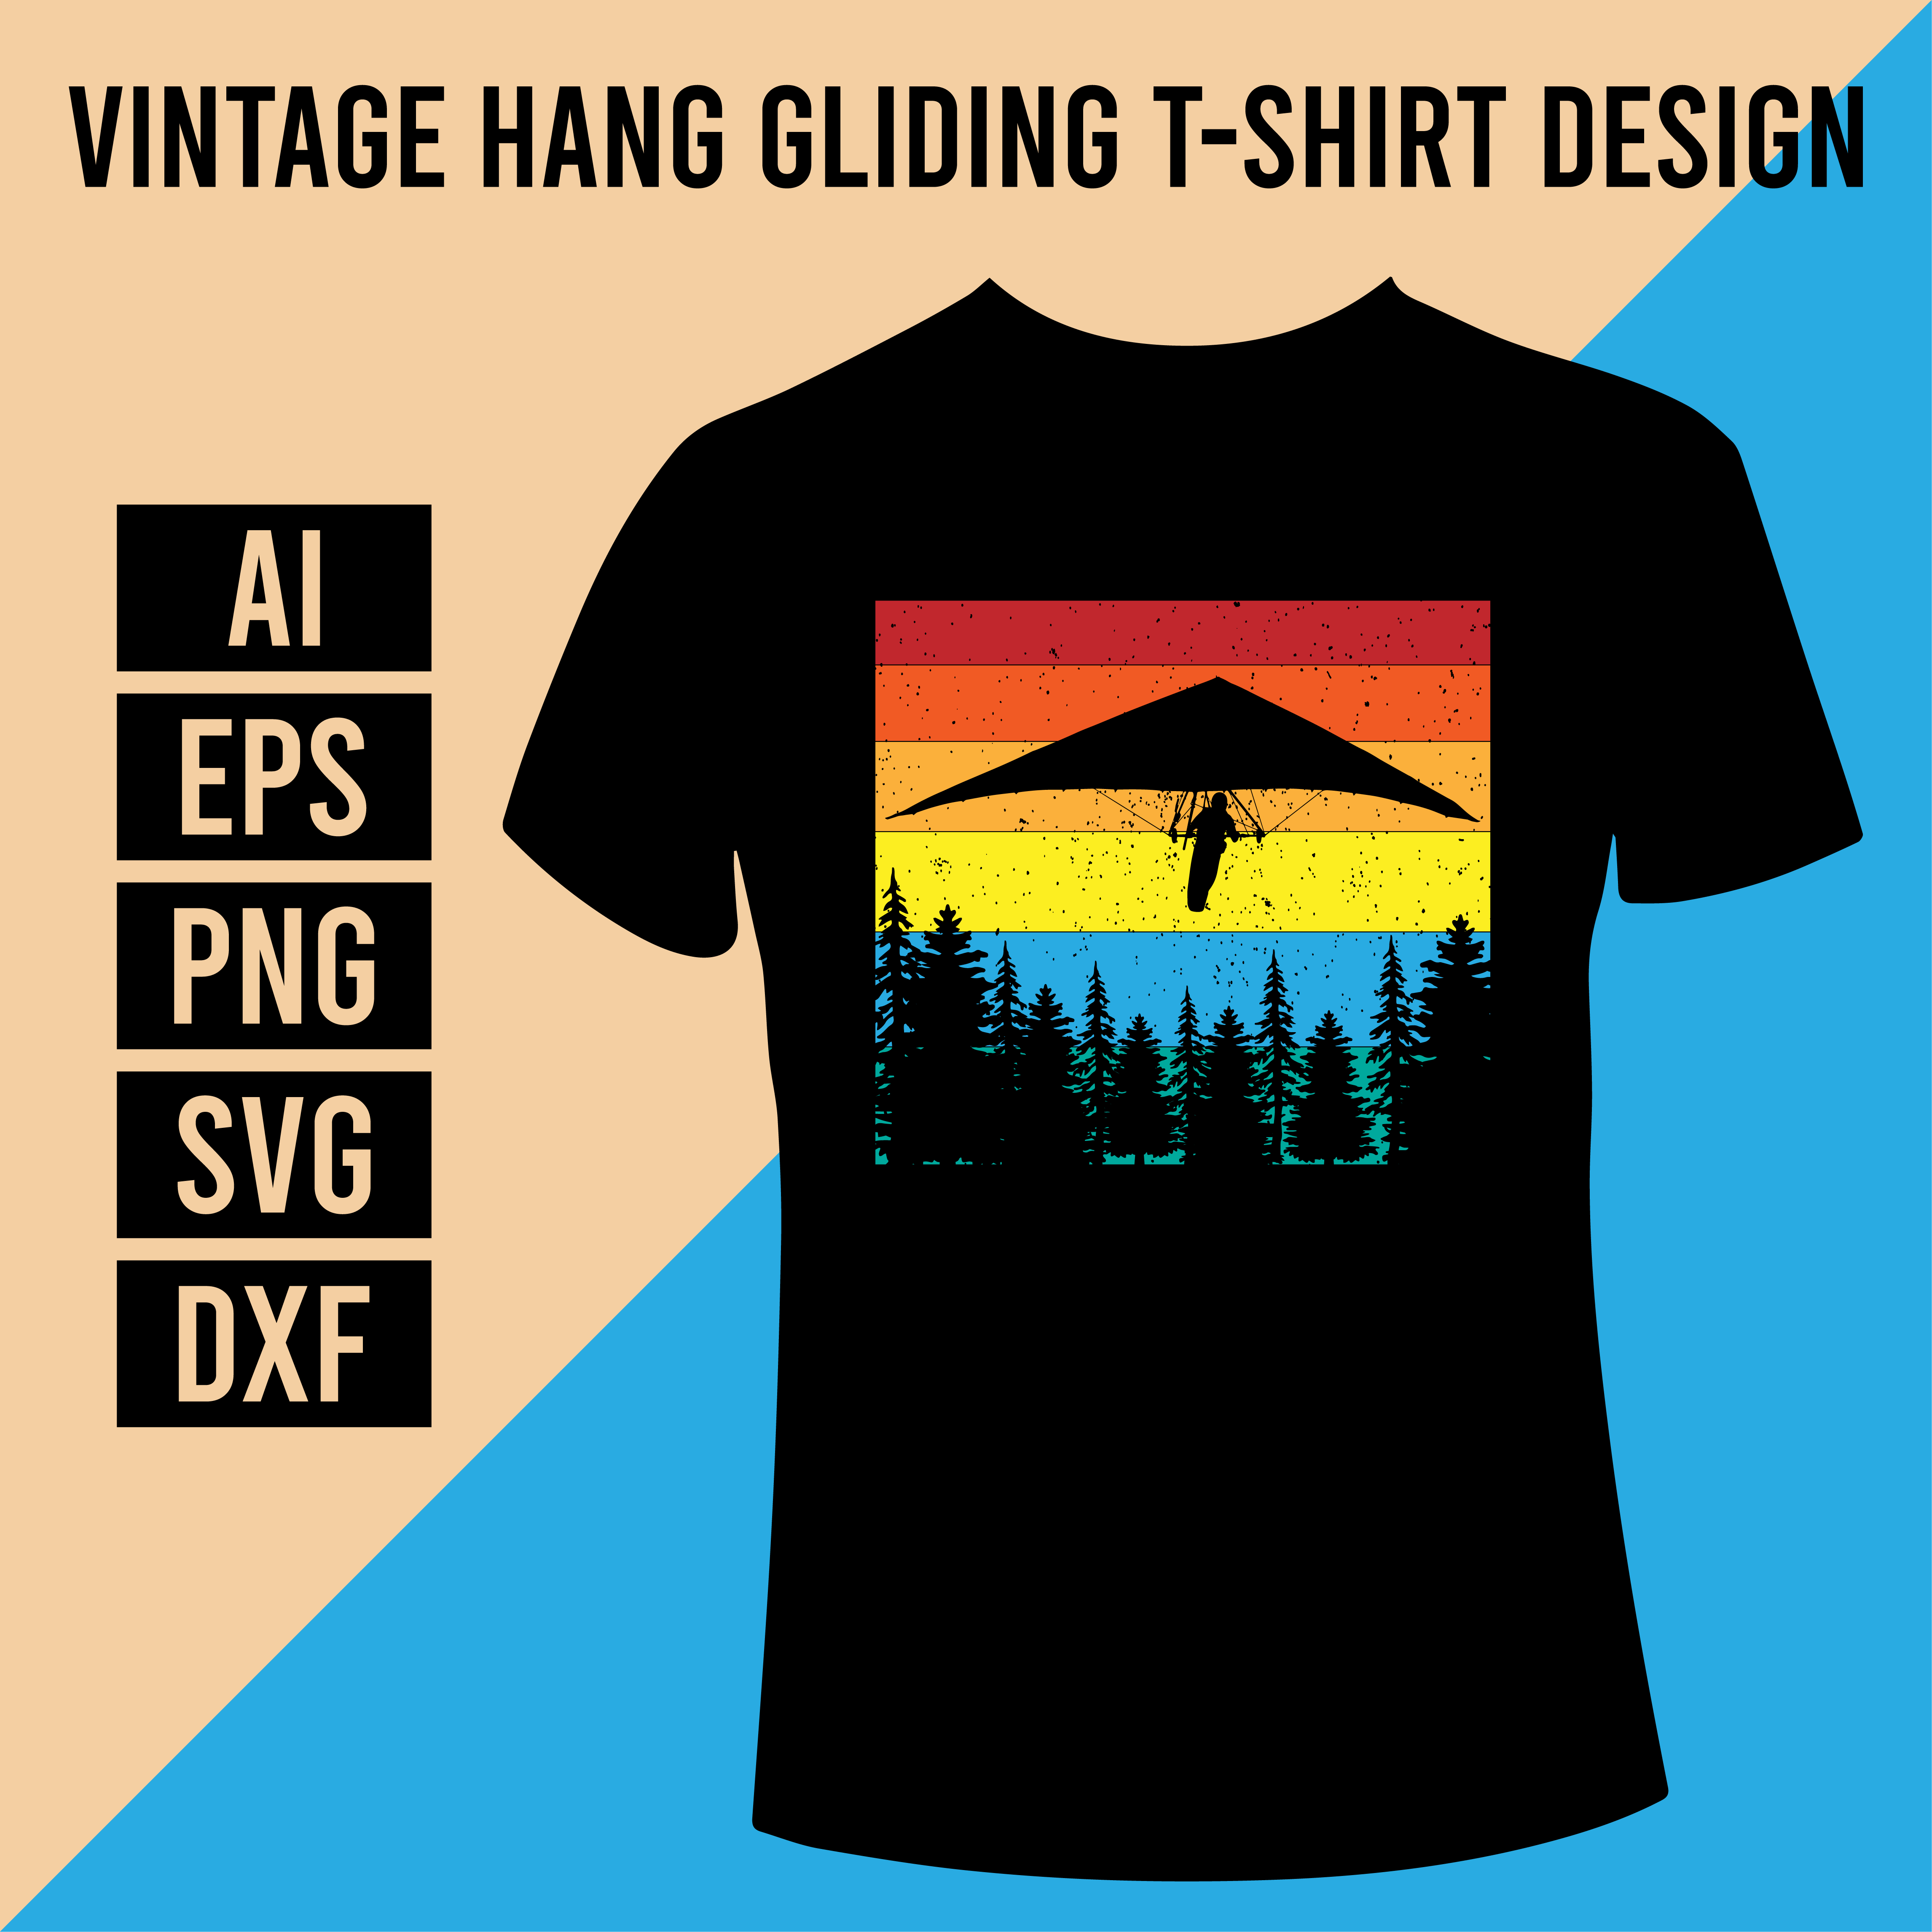 Vintage Hang Gliding T-Shirt Design cover image.